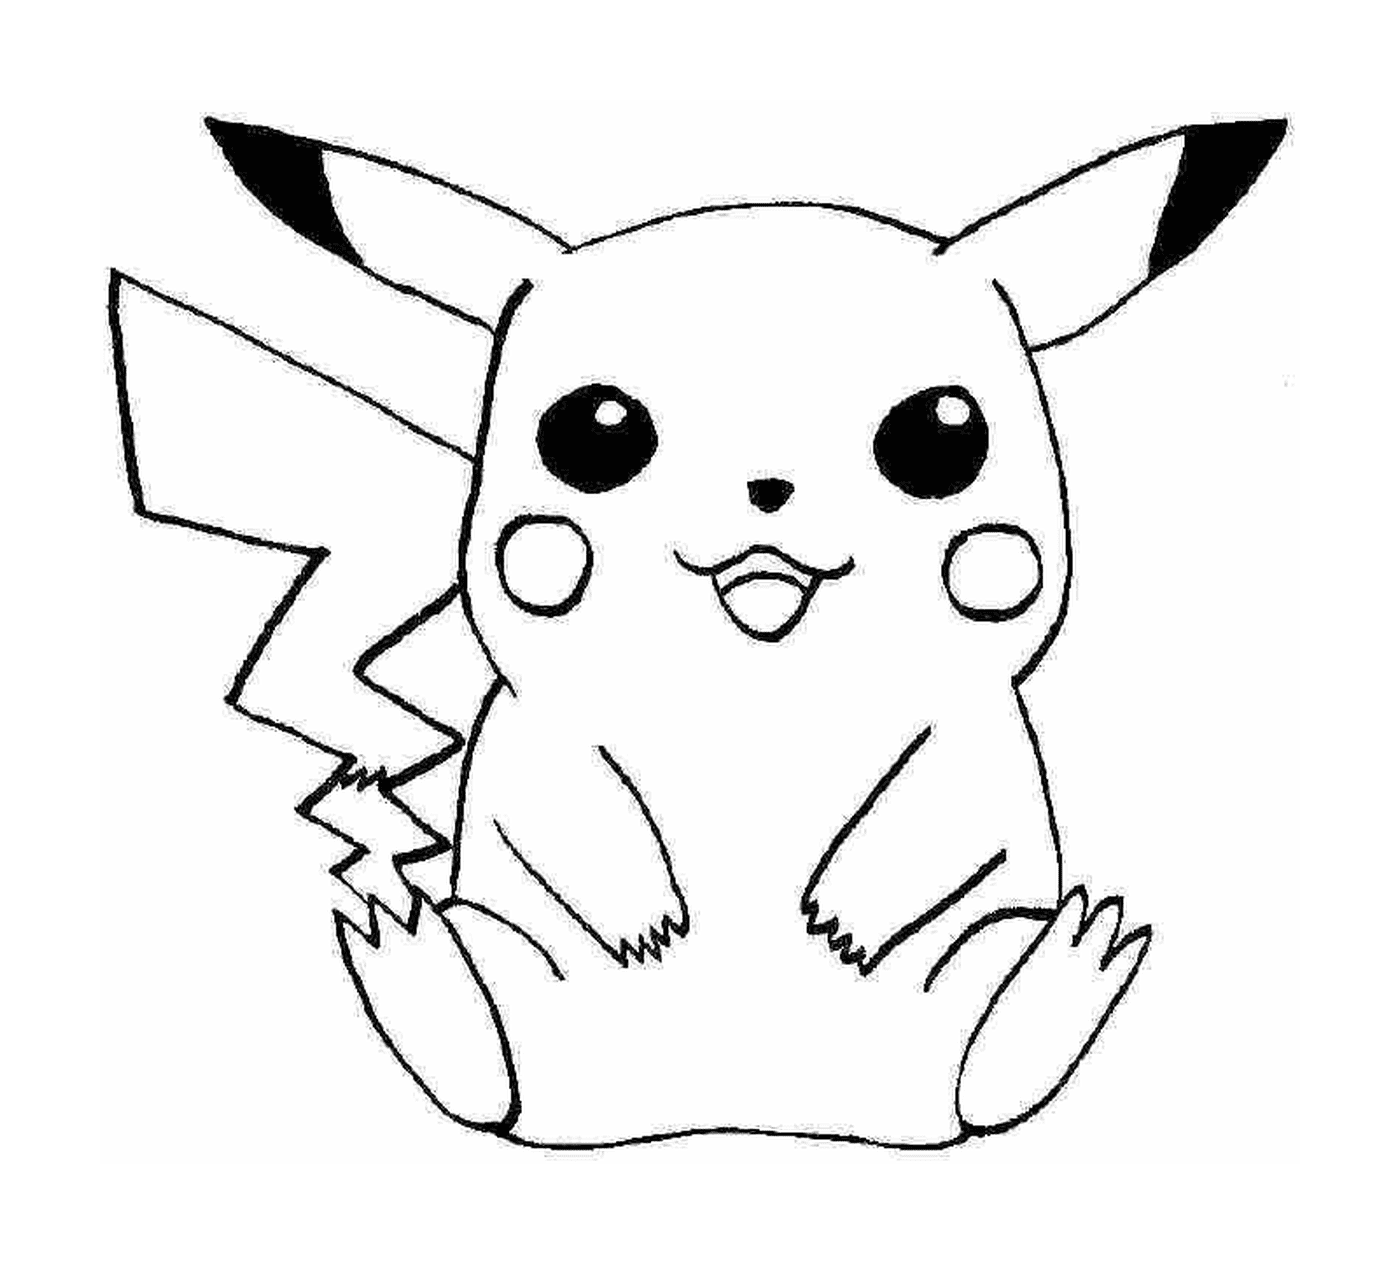  Pikachu, símbolo de adorabilidade 